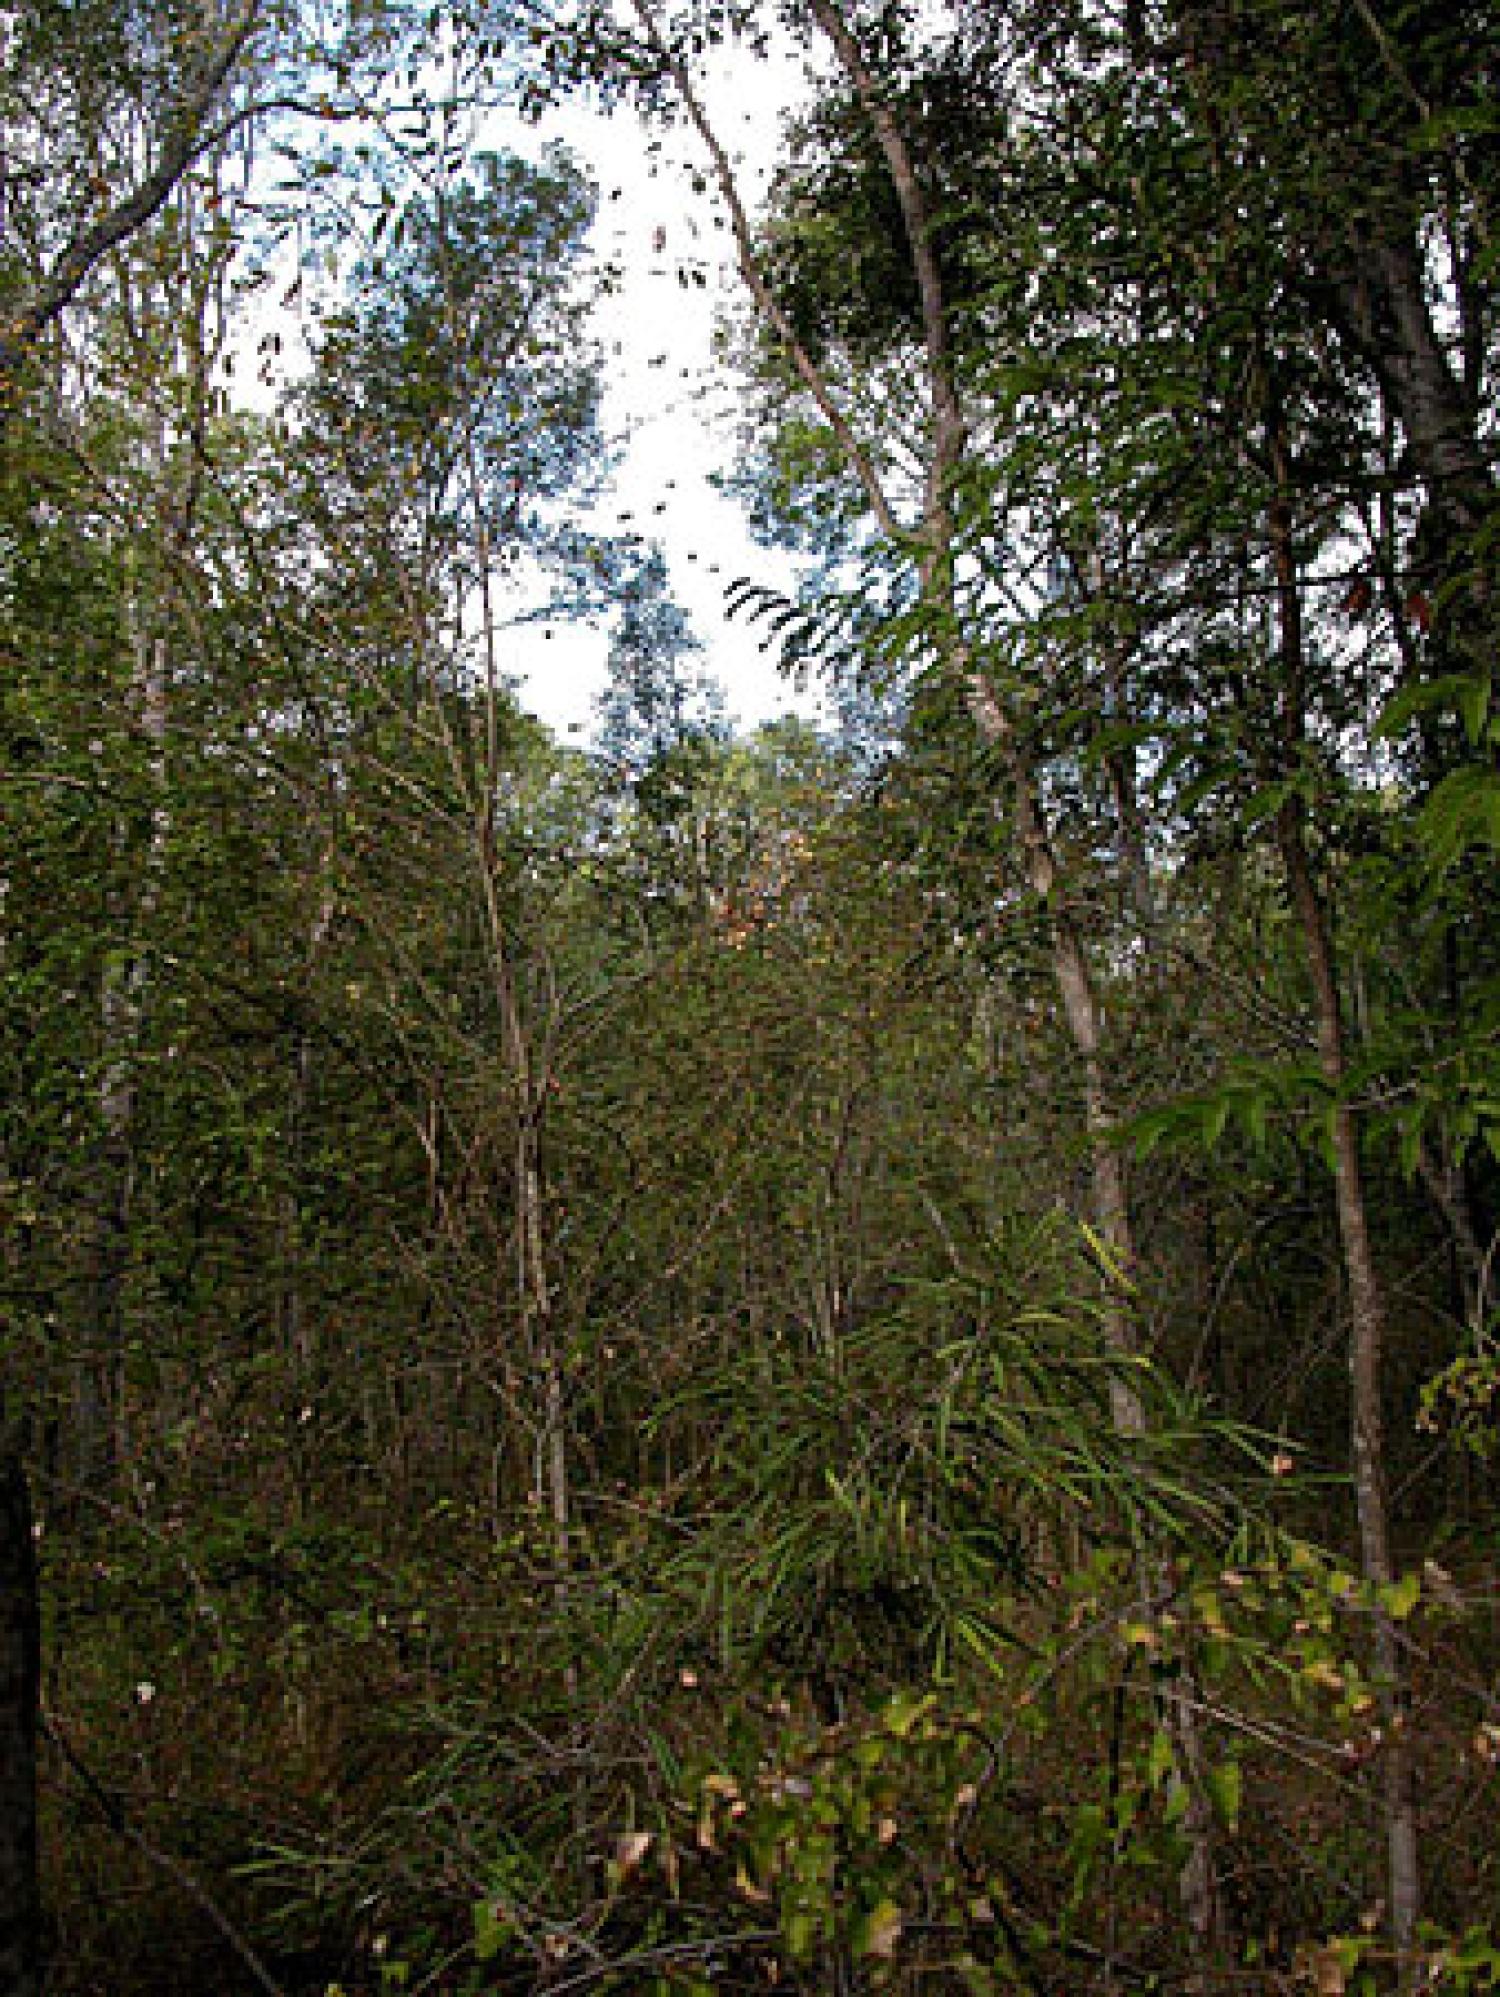 The Beza Mahafaly special reserve forest habitat